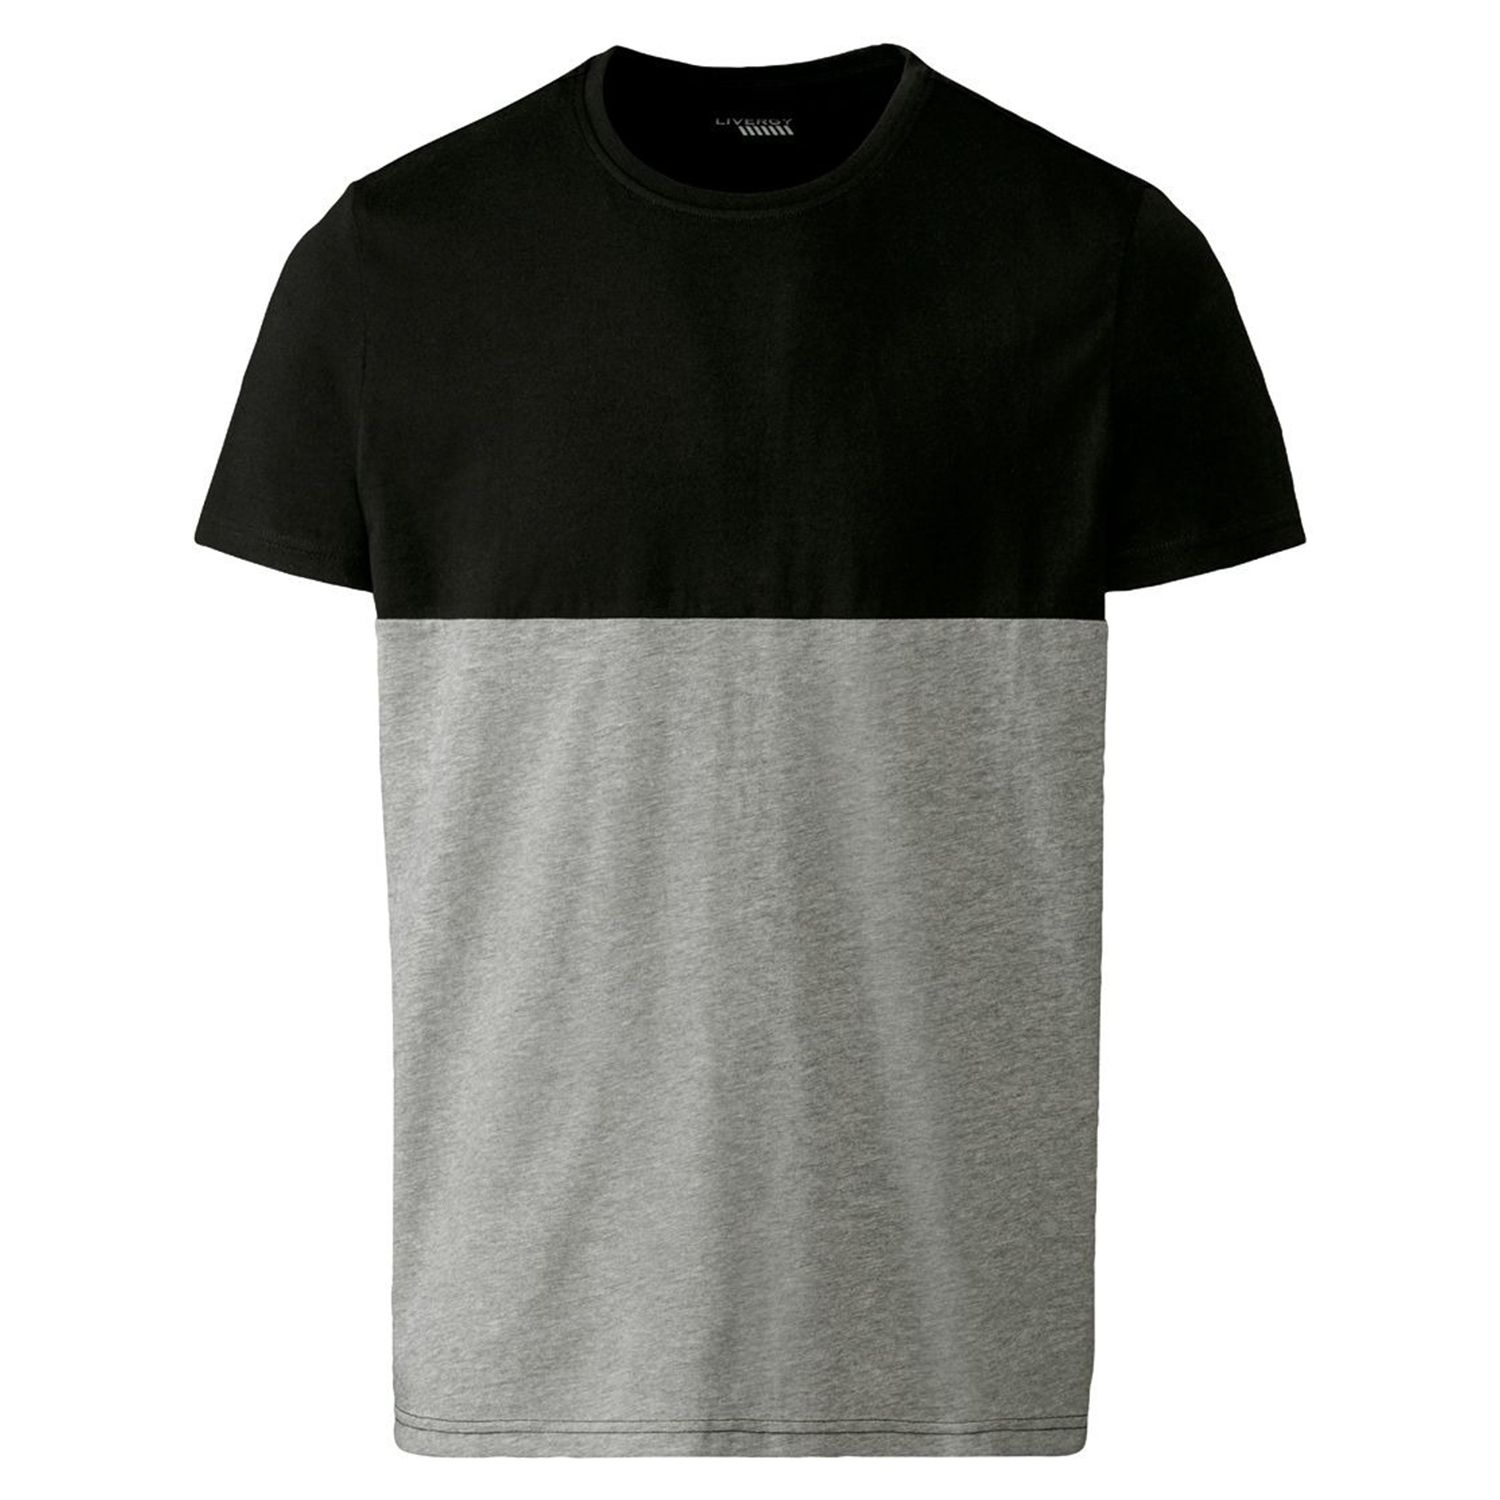 تی شرت آستین کوتاه مردانه لیورجی مدل دورنگ کد WorkBLK2022 رنگ طوسی